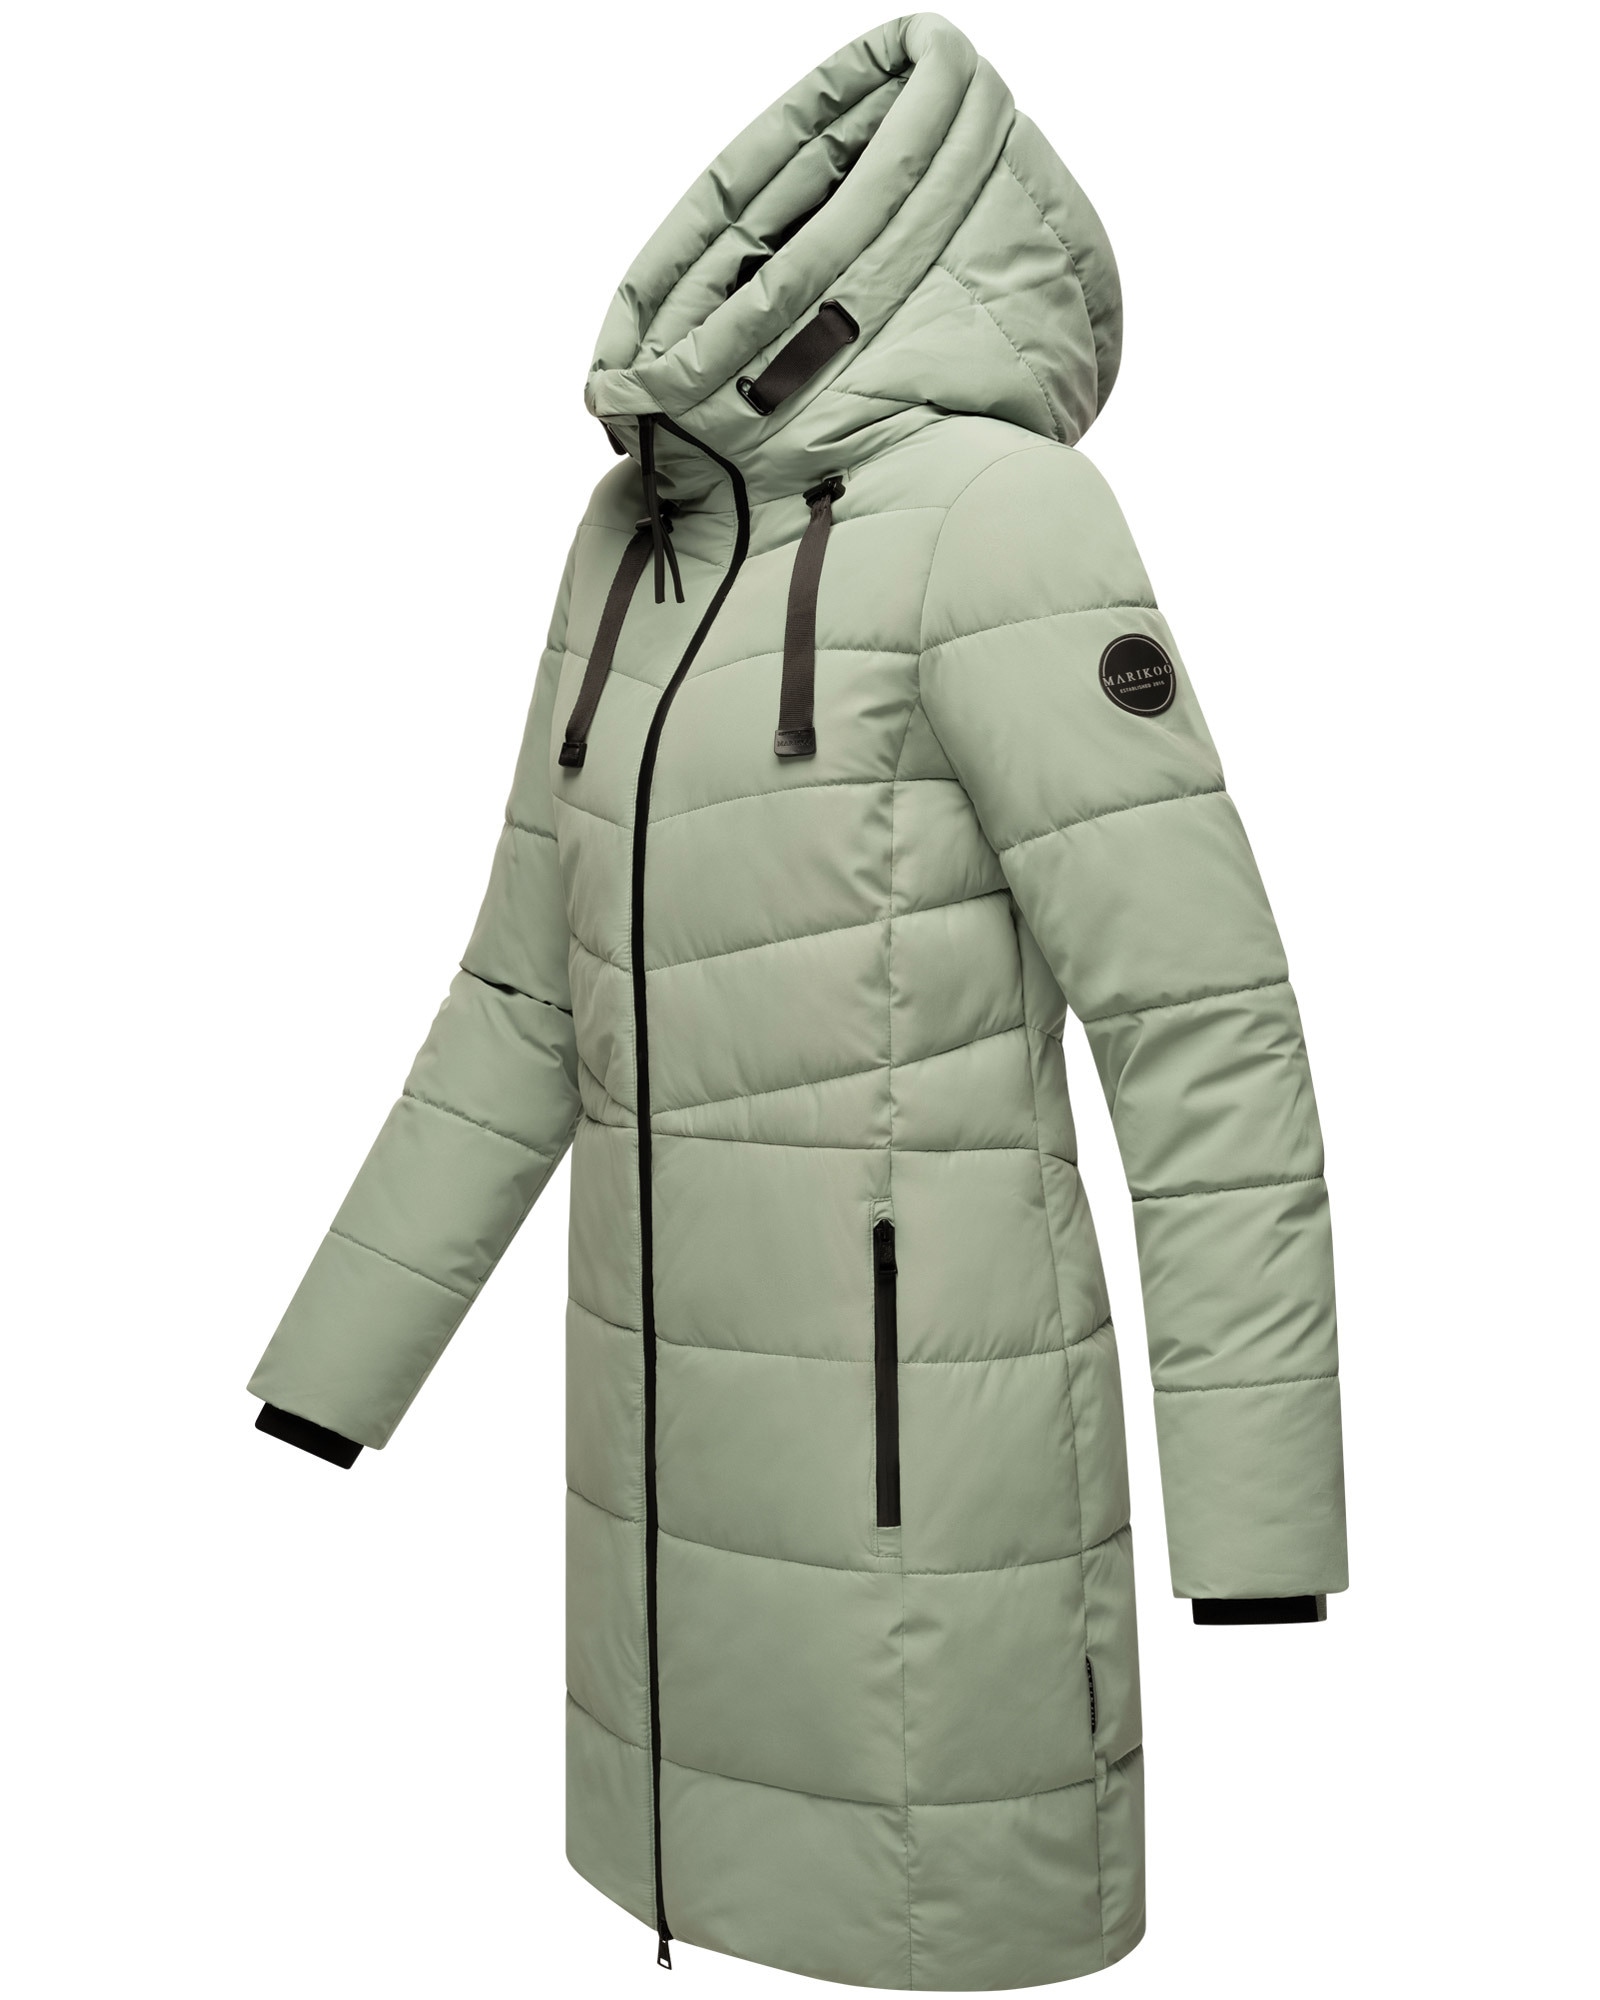 Marikoo Winterjacke »Natsukoo XVI«, Stepp Mantel mit großer Kapuze für  bestellen | BAUR